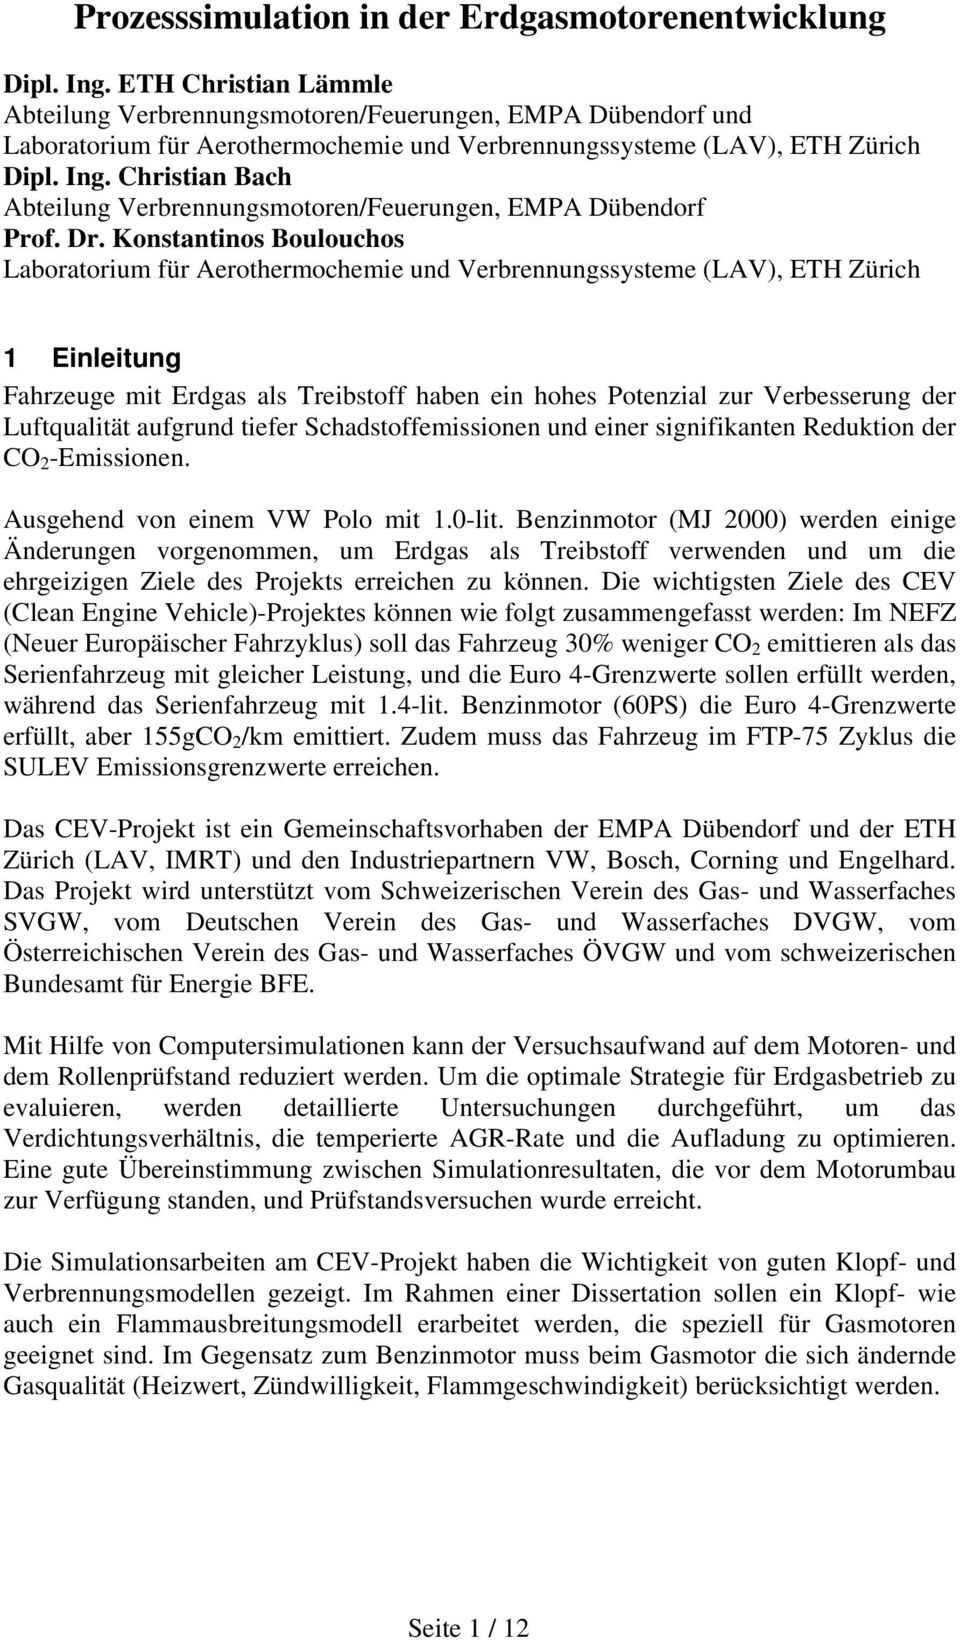 Christian Bach Abteilung Verbrennungsmotoren/Feuerungen, EMPA Dübendorf Prof. Dr.